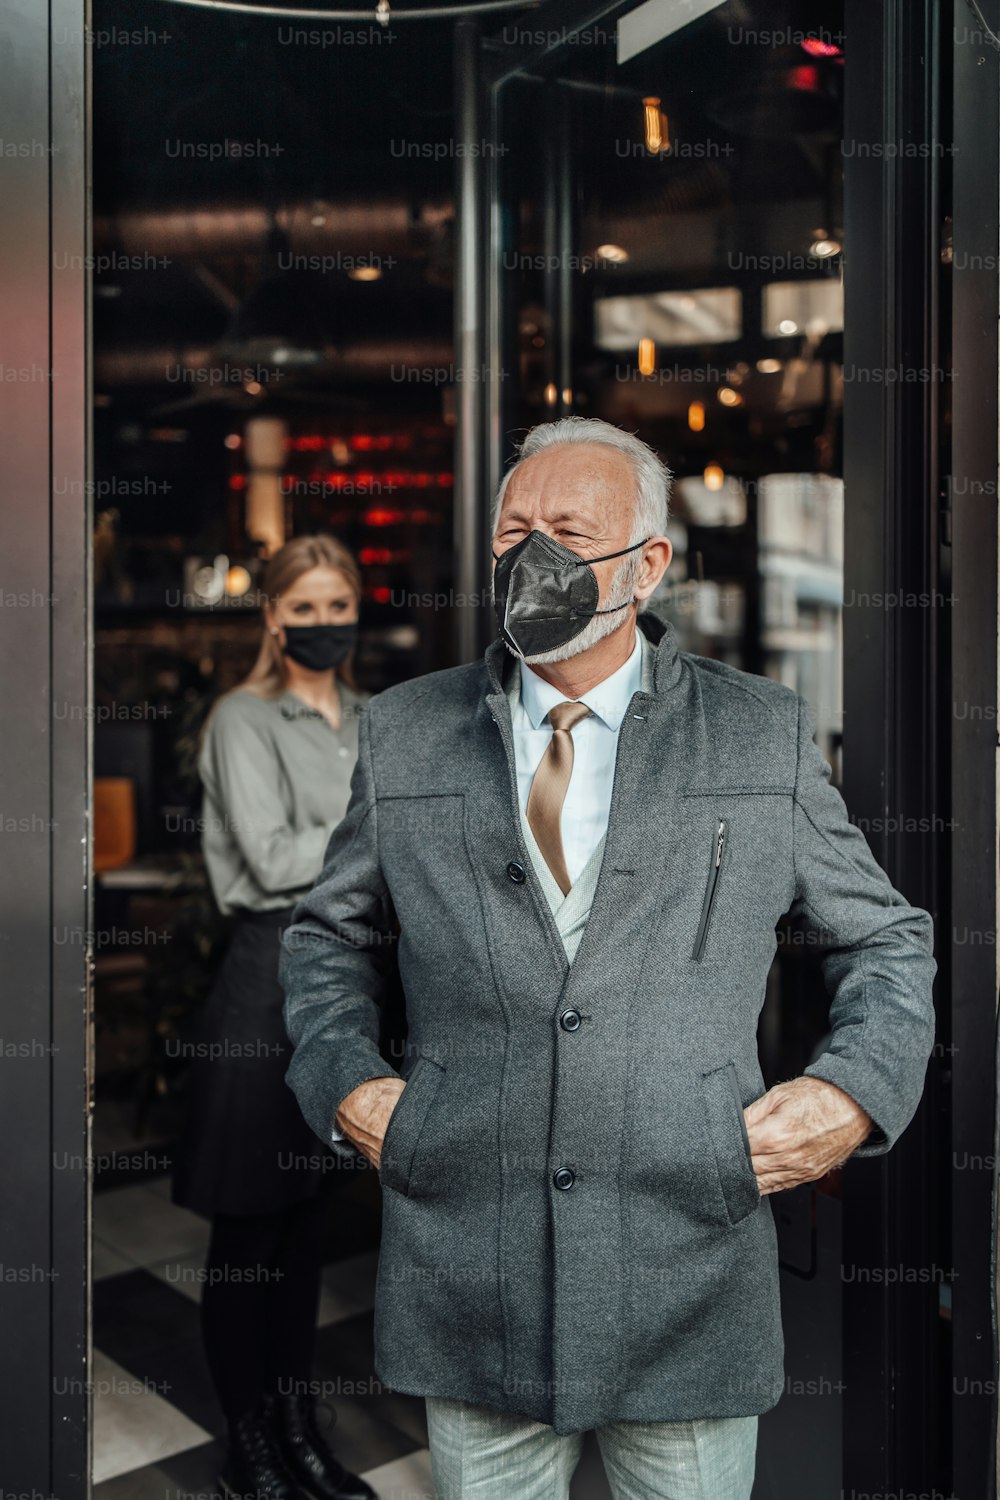 Un homme d’affaires chevronné sort d’un restaurant. La jeune serveuse le salue gentiment. Ils portent un masque de protection pour se protéger contre la pandémie de virus.